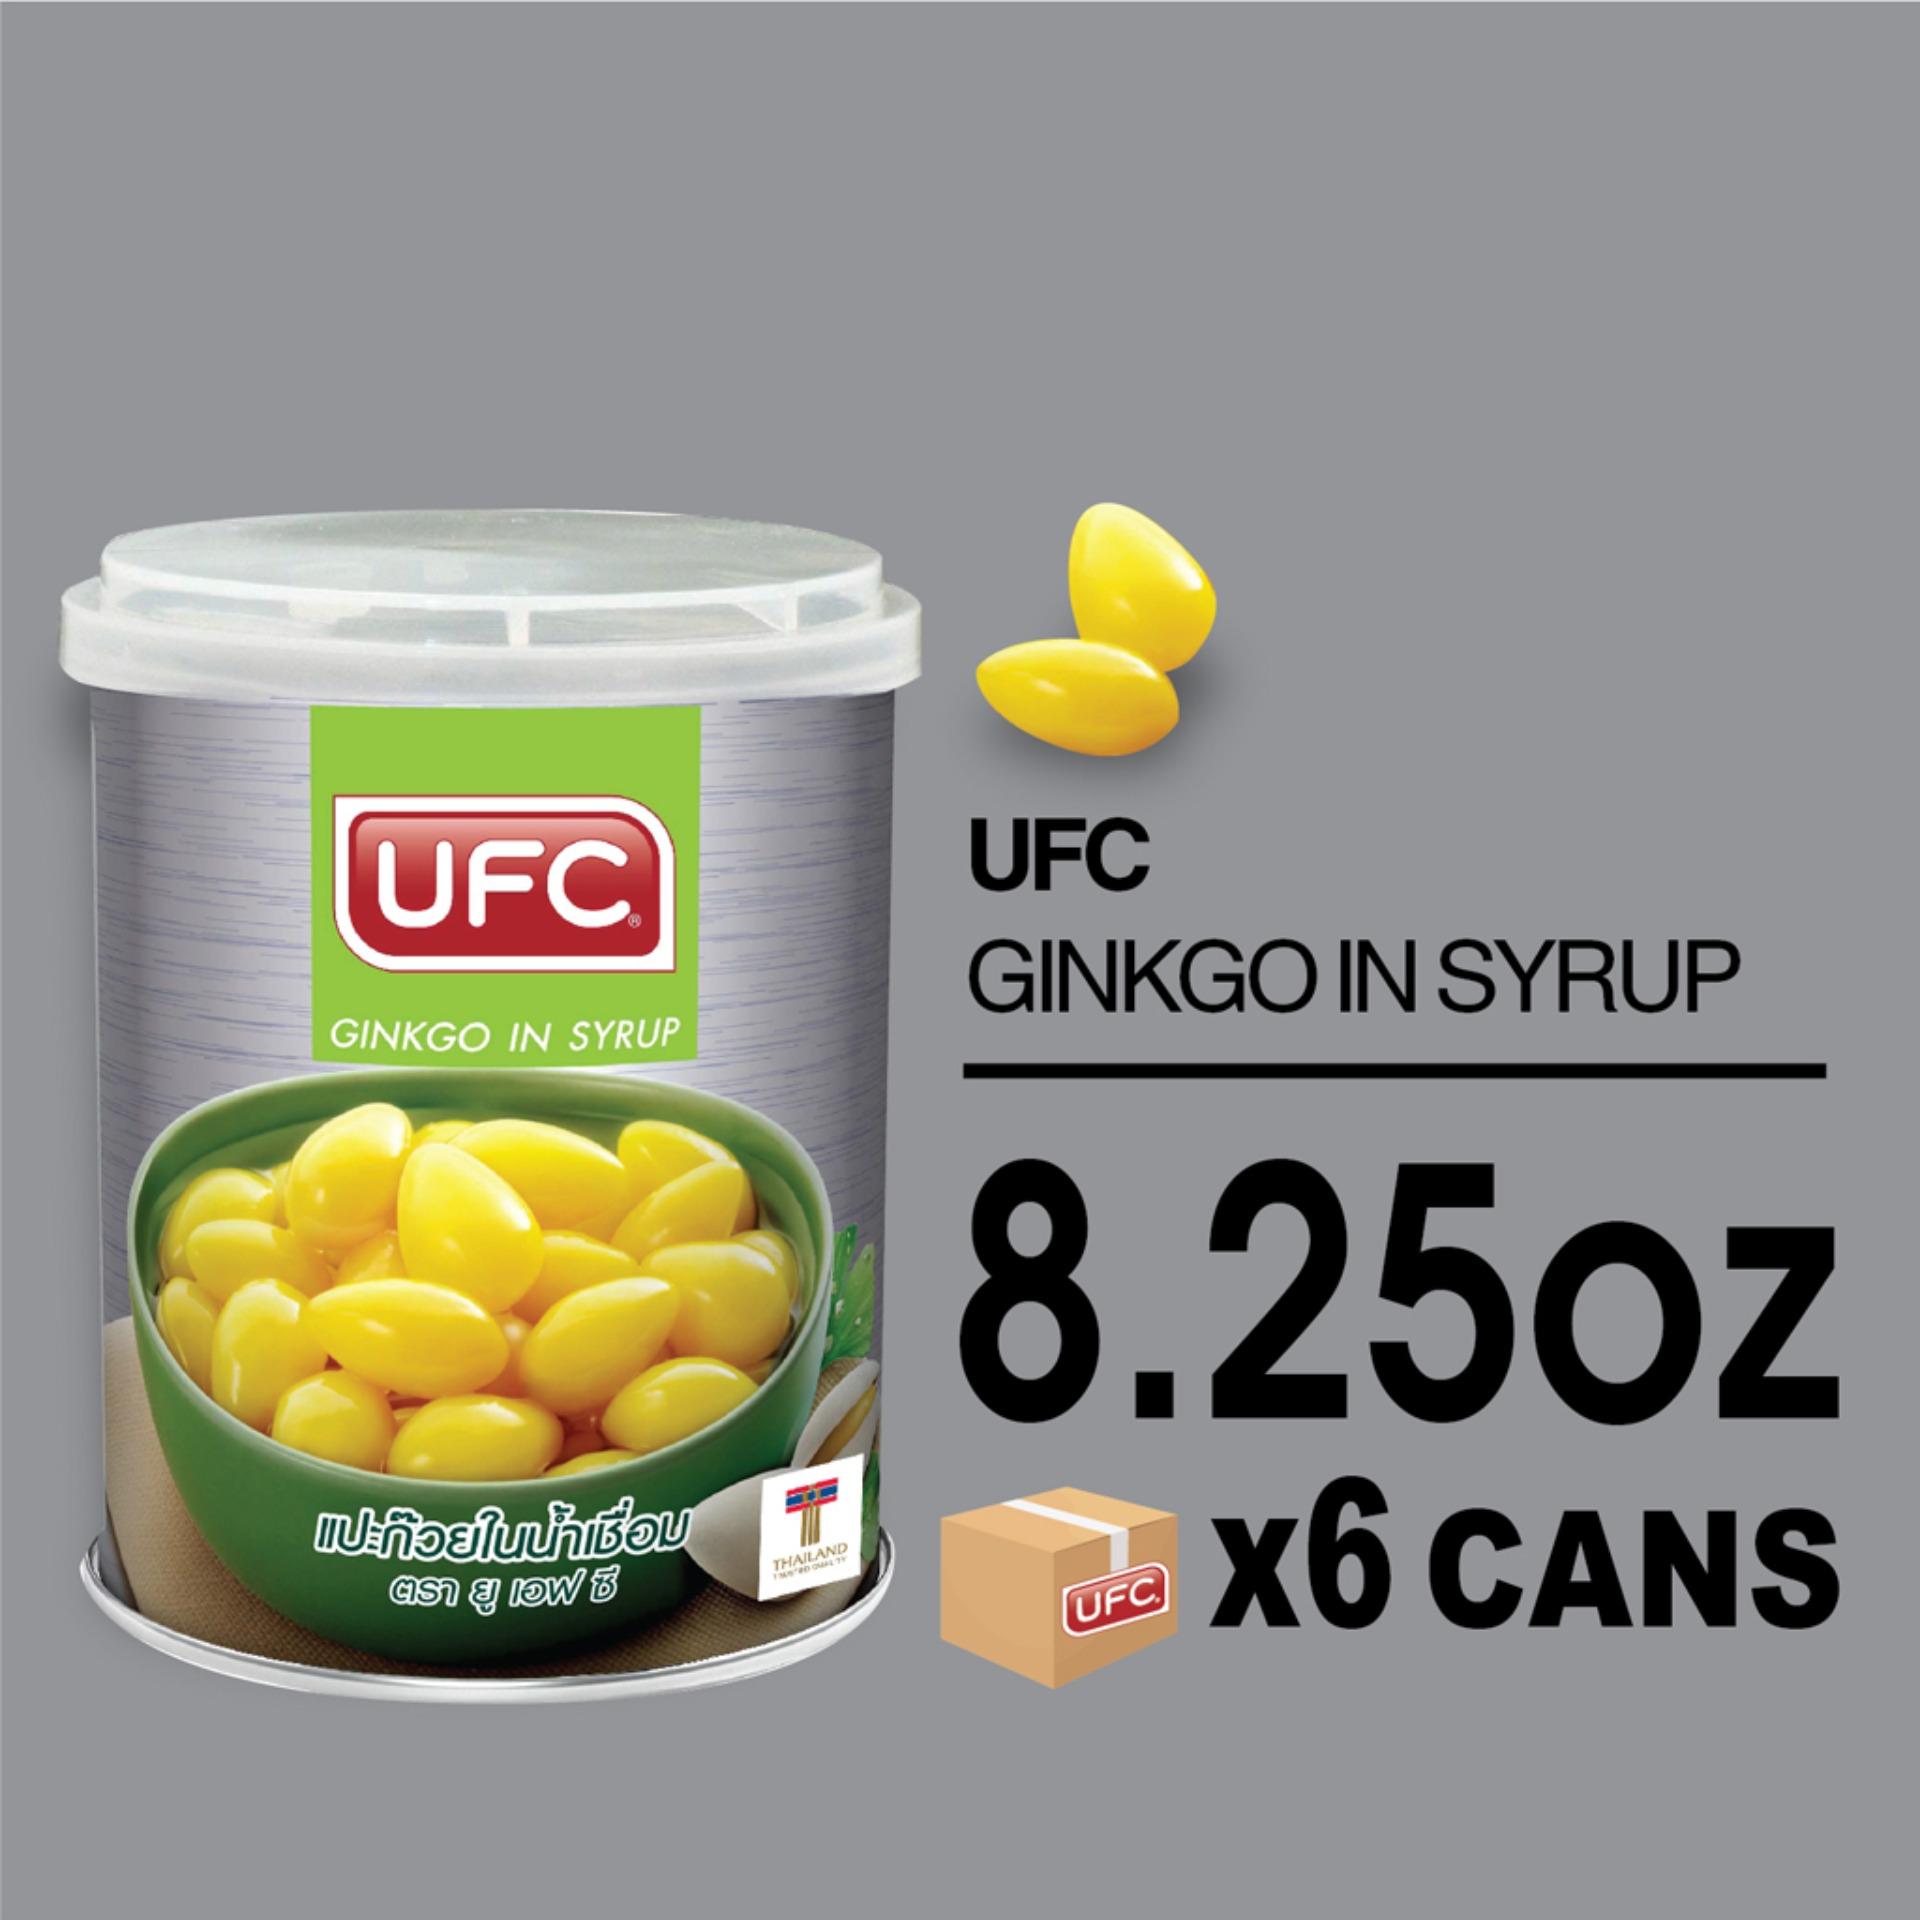 UFC Ginkgo in Syrup ยูเอฟซี แปะก๊วยในน้ำเชื่อม 8.25 ออนซ์ X 6 กระป๋อง